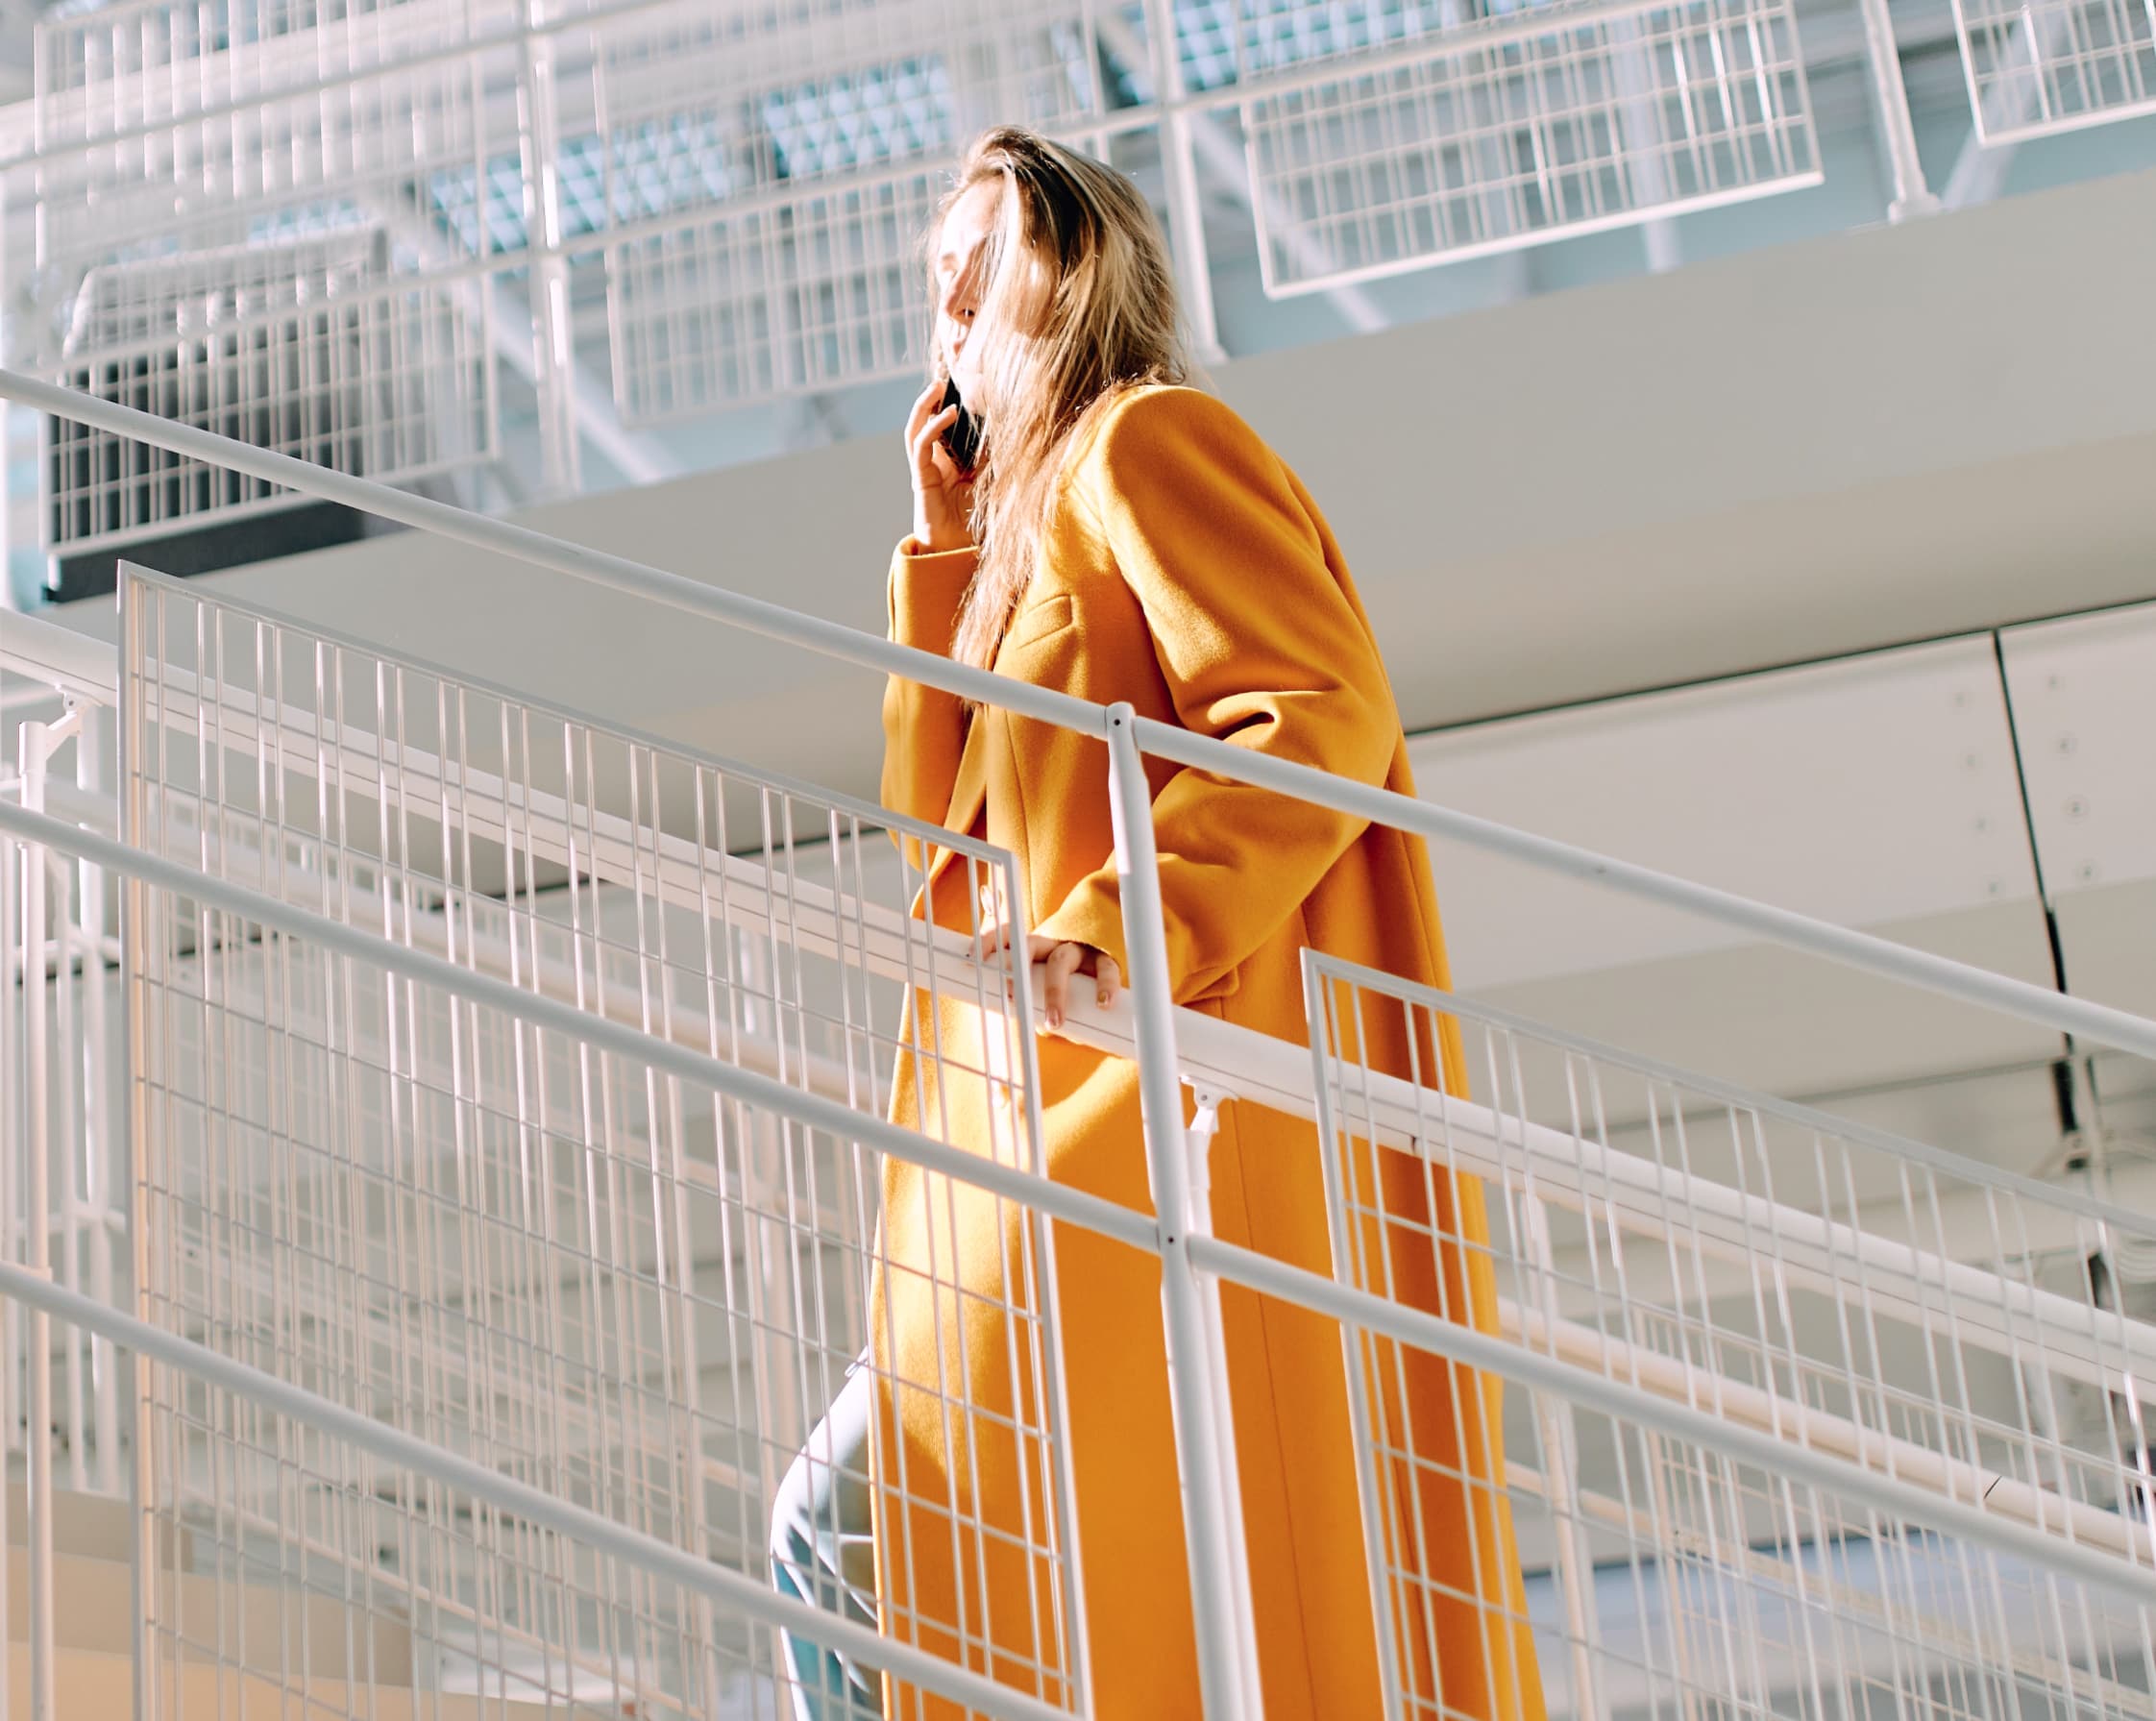 Une femme en manteau orange monte les escaliers pour passer à l'étape suivante de sa carrière